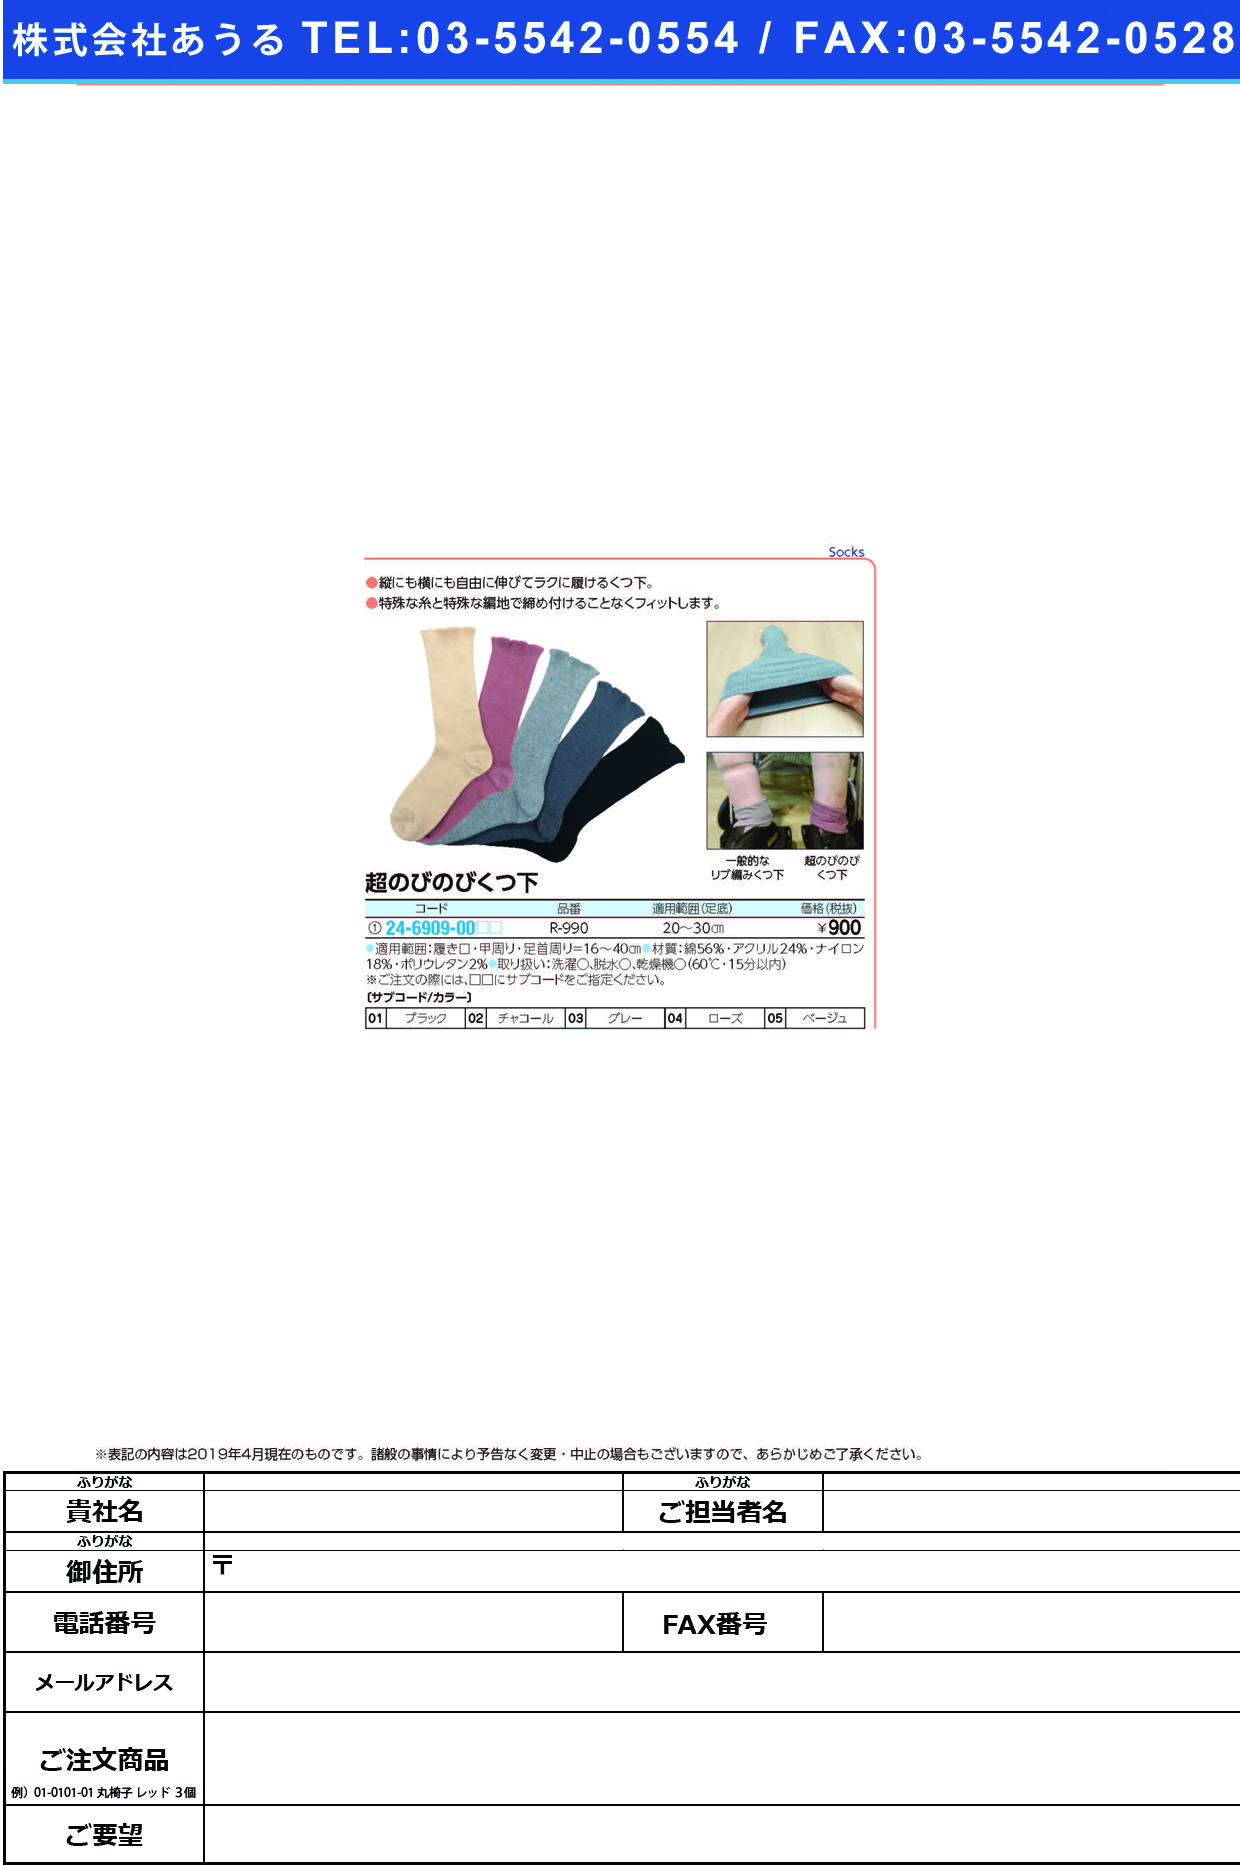 (24-6909-00)超のびのびくつ下 R-990 ﾁｮｳﾉﾋﾞﾉﾋﾞｸﾂｼﾀ ブラック(日本エンゼル)【1足単位】【2019年カタログ商品】